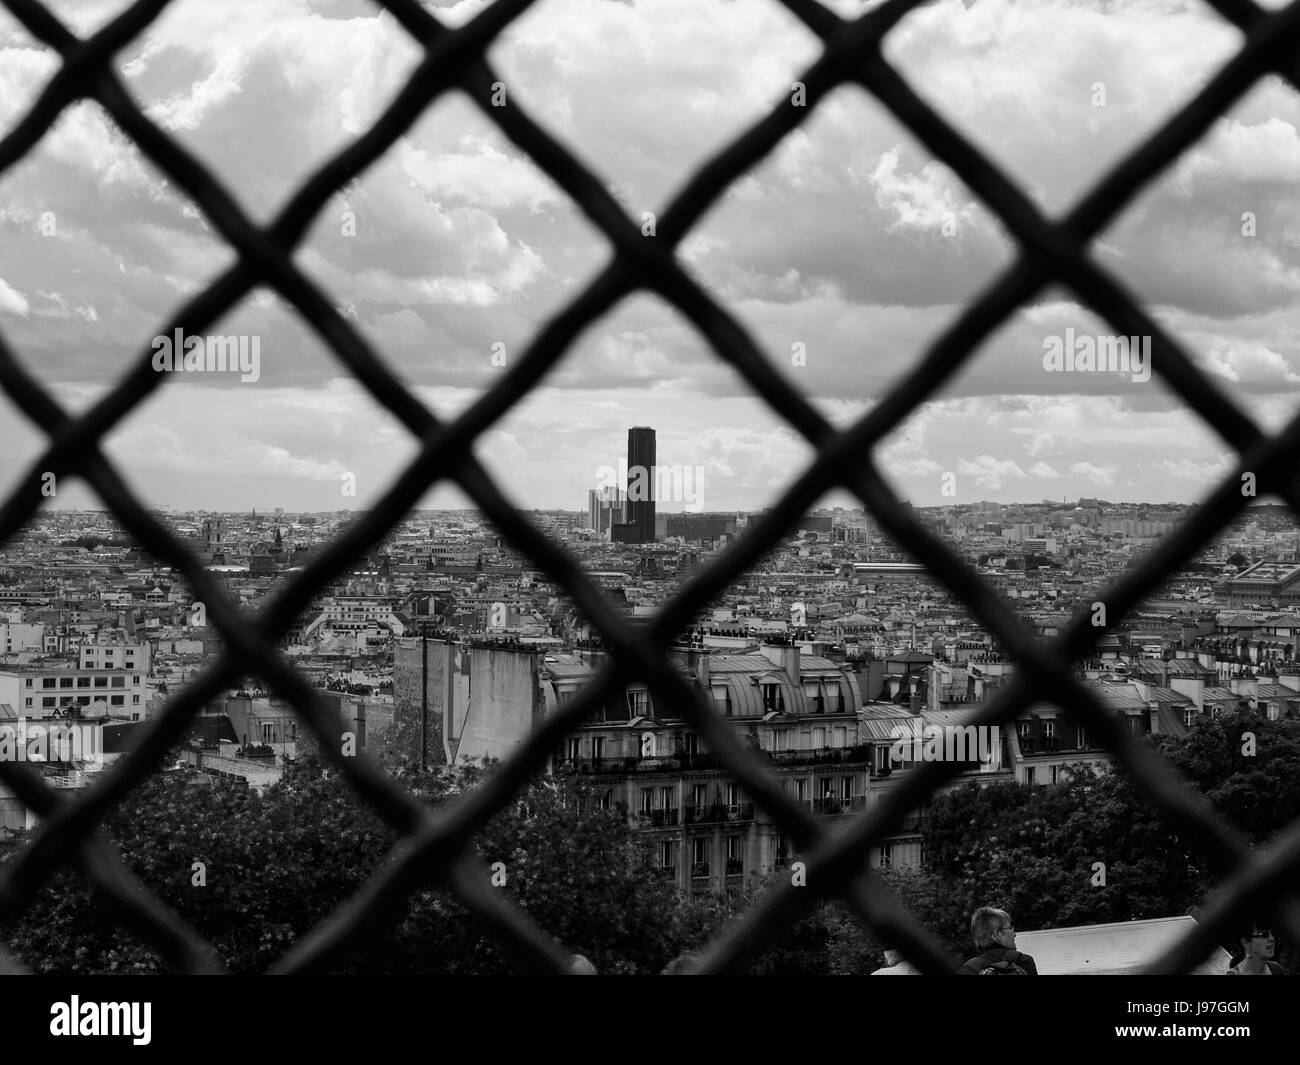 Lo skyline di Parigi attraverso una recinzione. La Tour grattacielo può essere visto in lontananza. Immagine potrebbe essere visto come una metafora per l'accordo di Parigi climate deal. Foto Stock